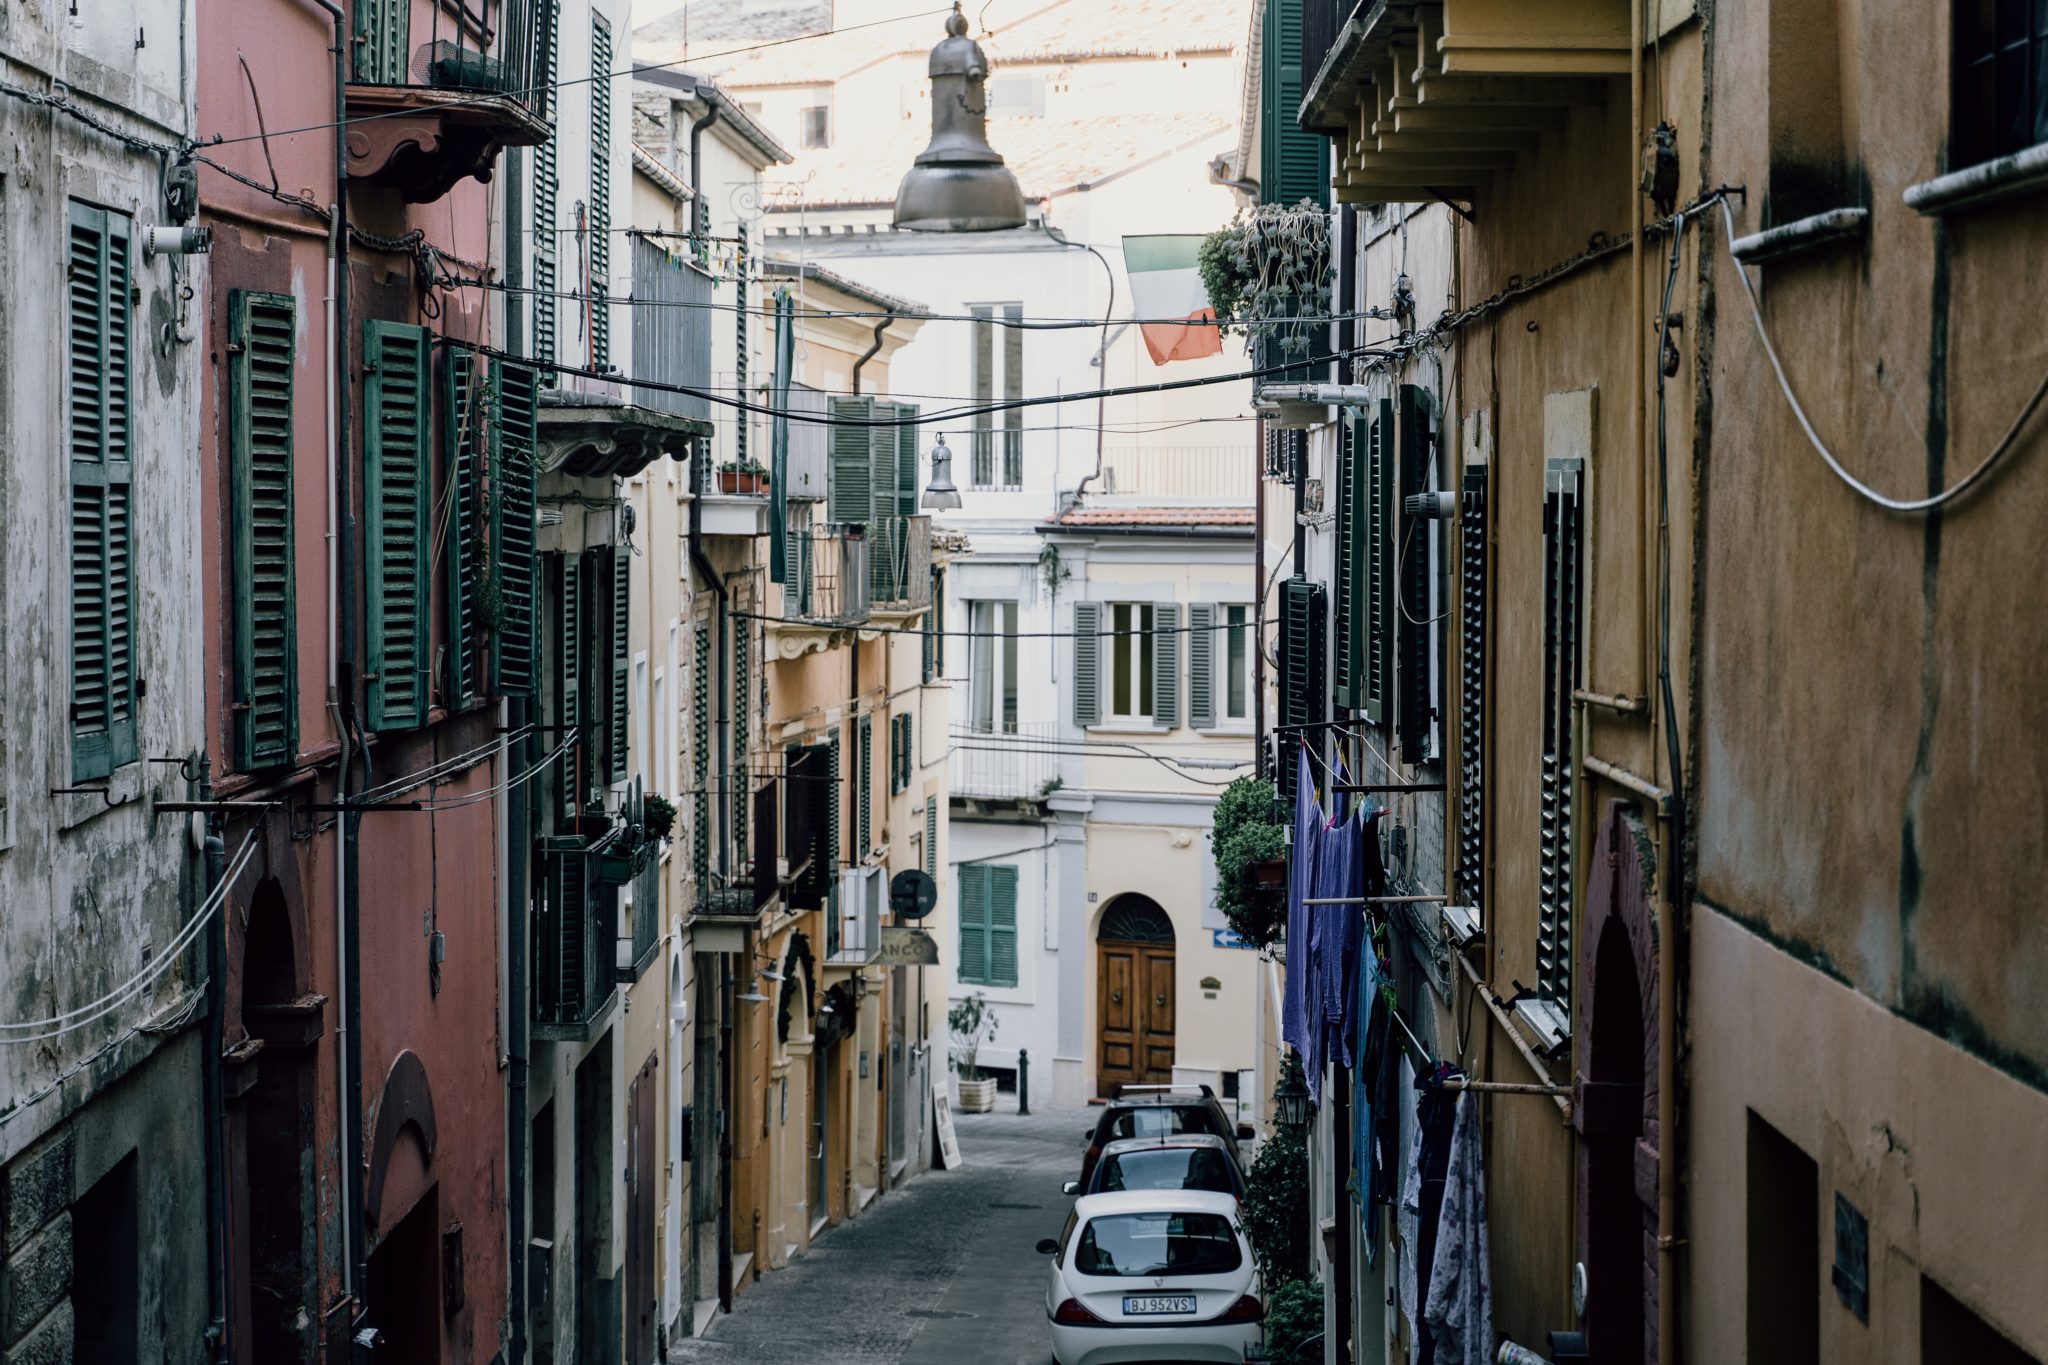 consejos para viajar a Italia: Ten cuidado al recorrer las calles de Italia